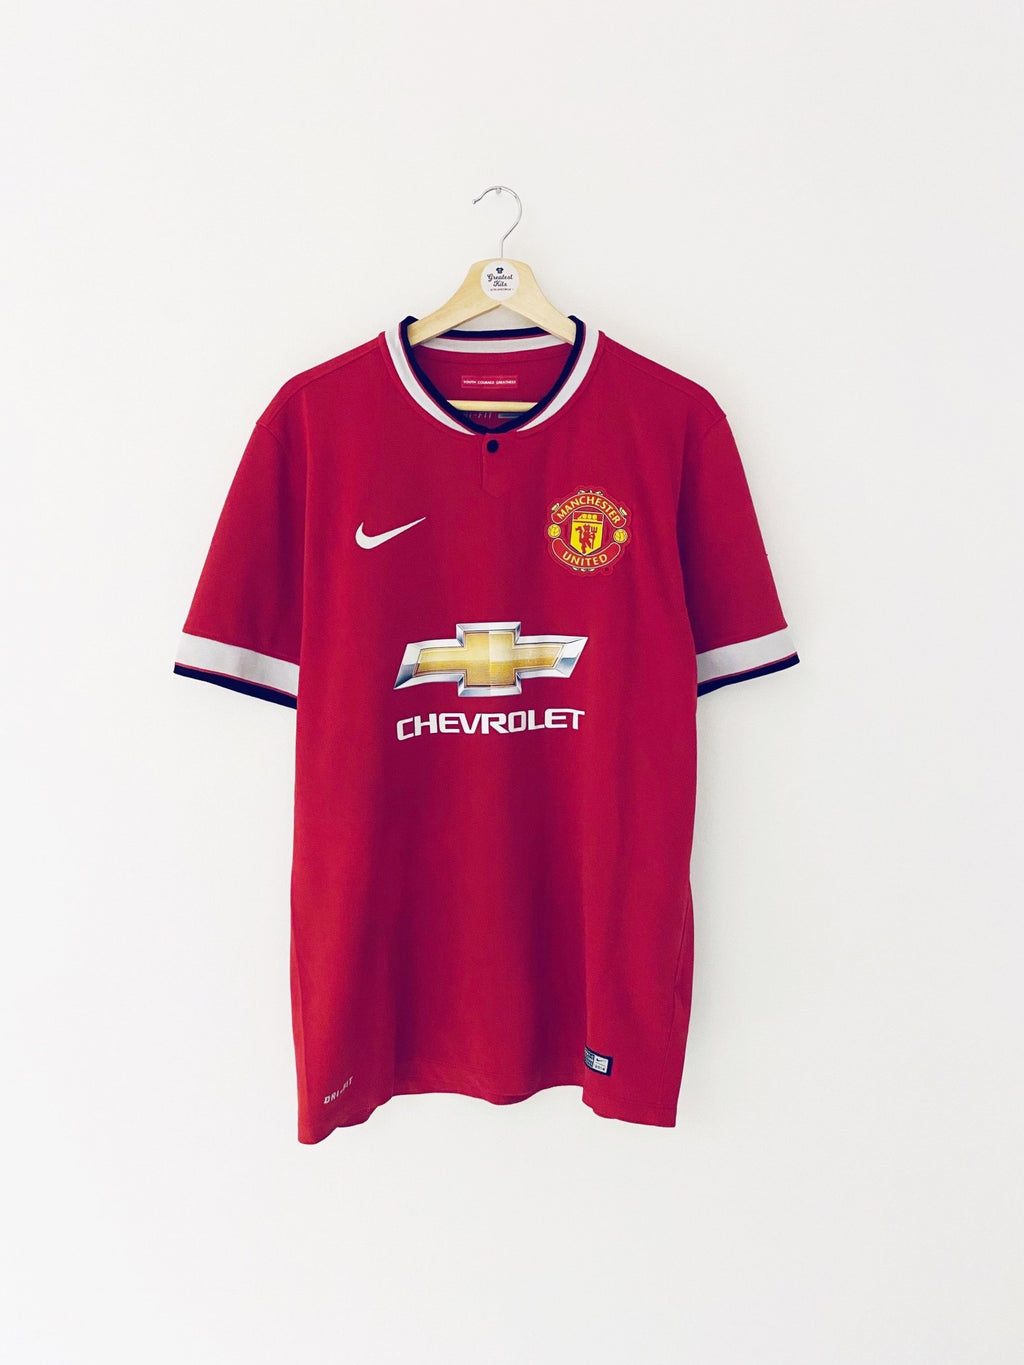 Compra Camiseta Manchester City 2014-15 Home Nike Original